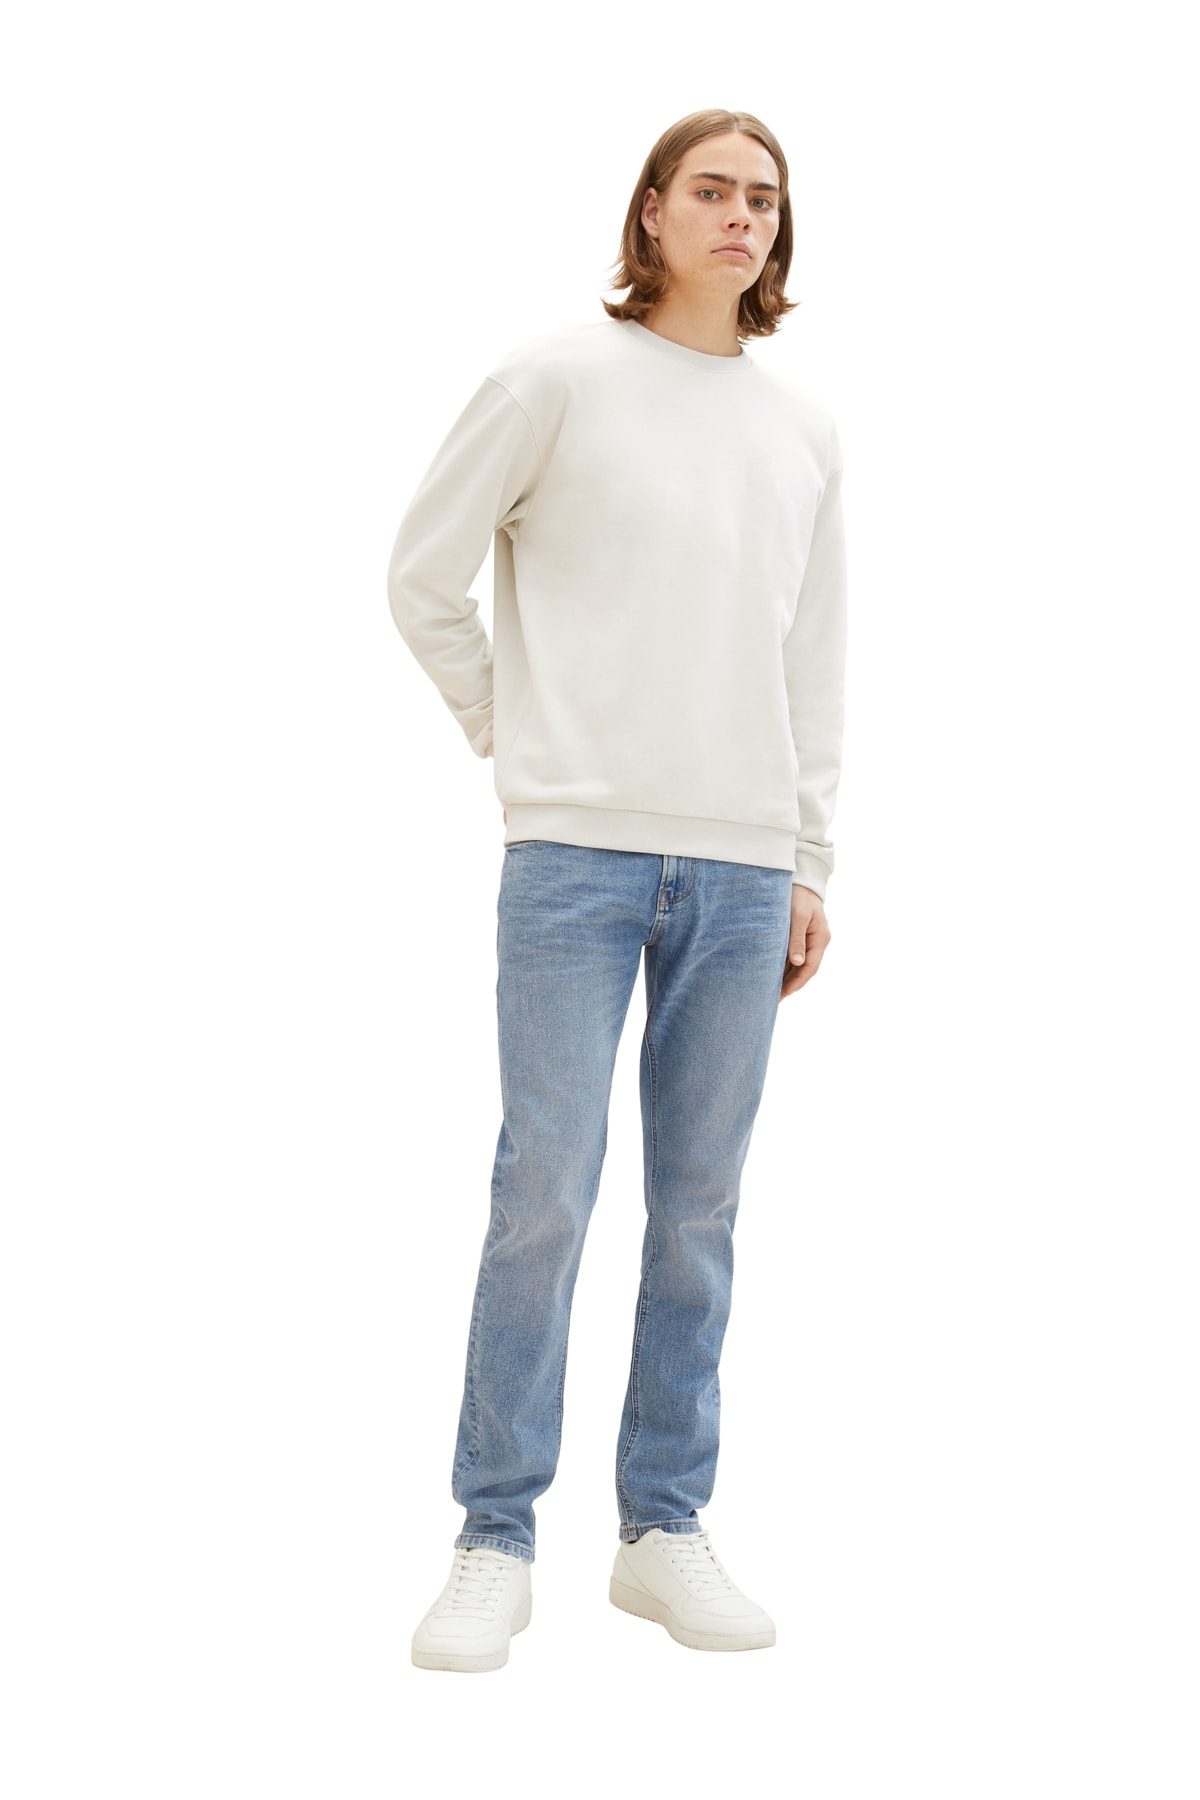 Джинсы - Серые - Прямые Tom Tailor Denim, серый джинсы серые прямые tom tailor denim серый